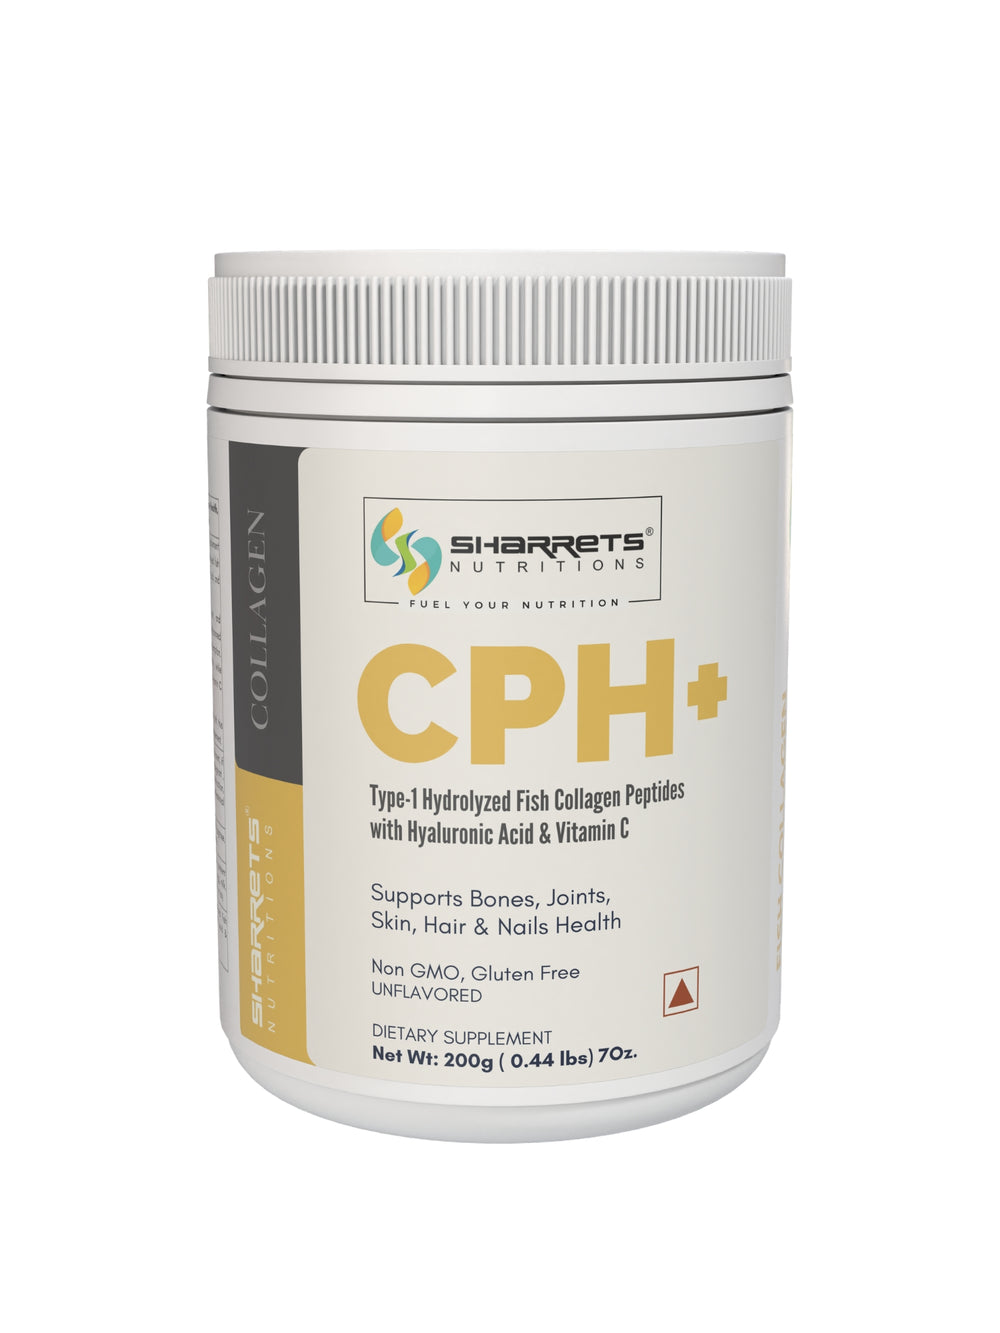 CPH+ Fish collagen supplement